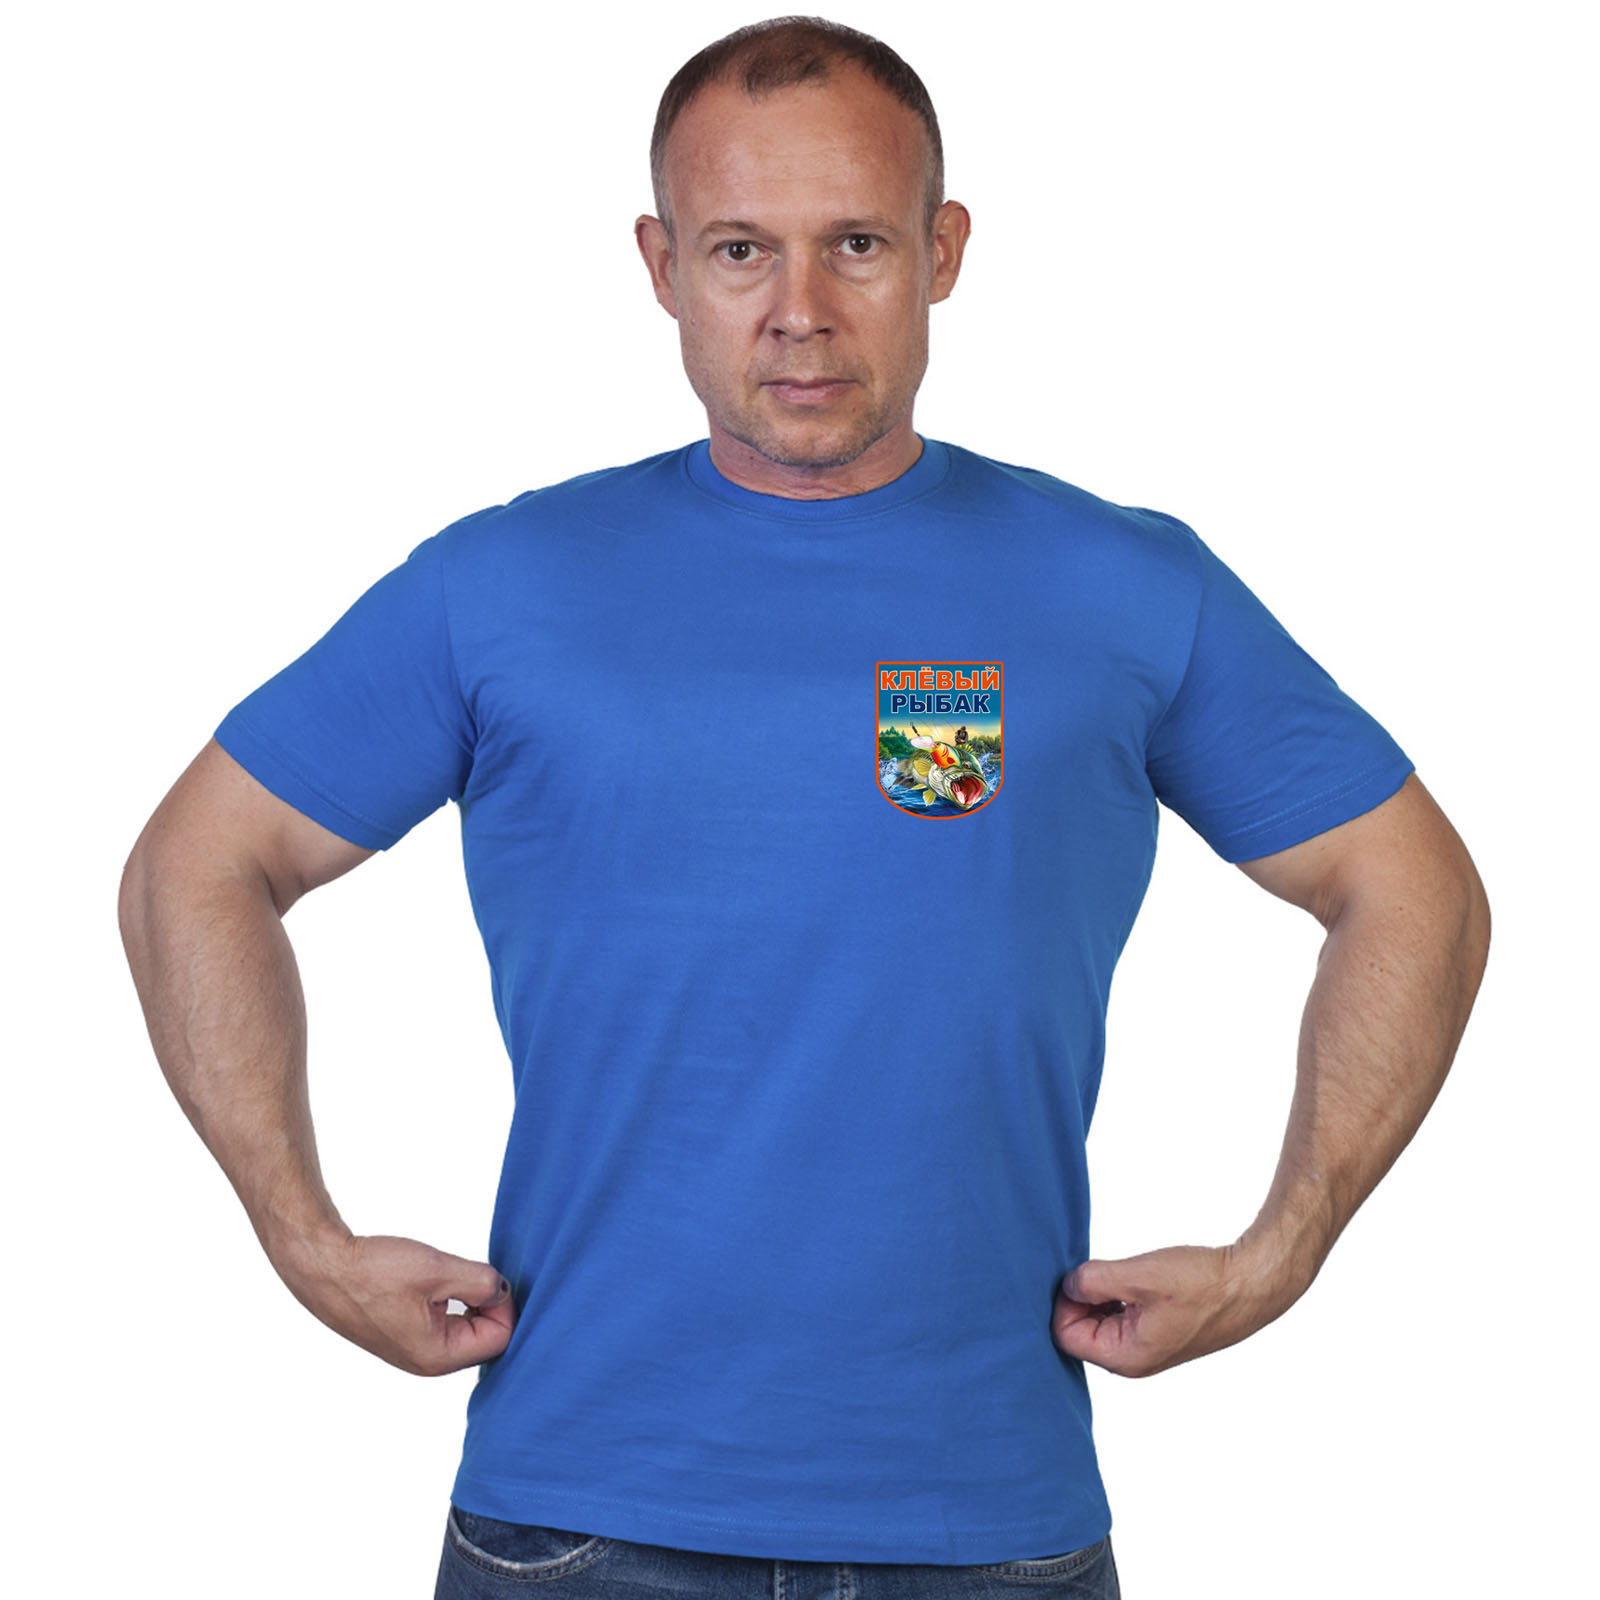 Васильковая футболка с термотрансфером "Клёвый рыбак" 